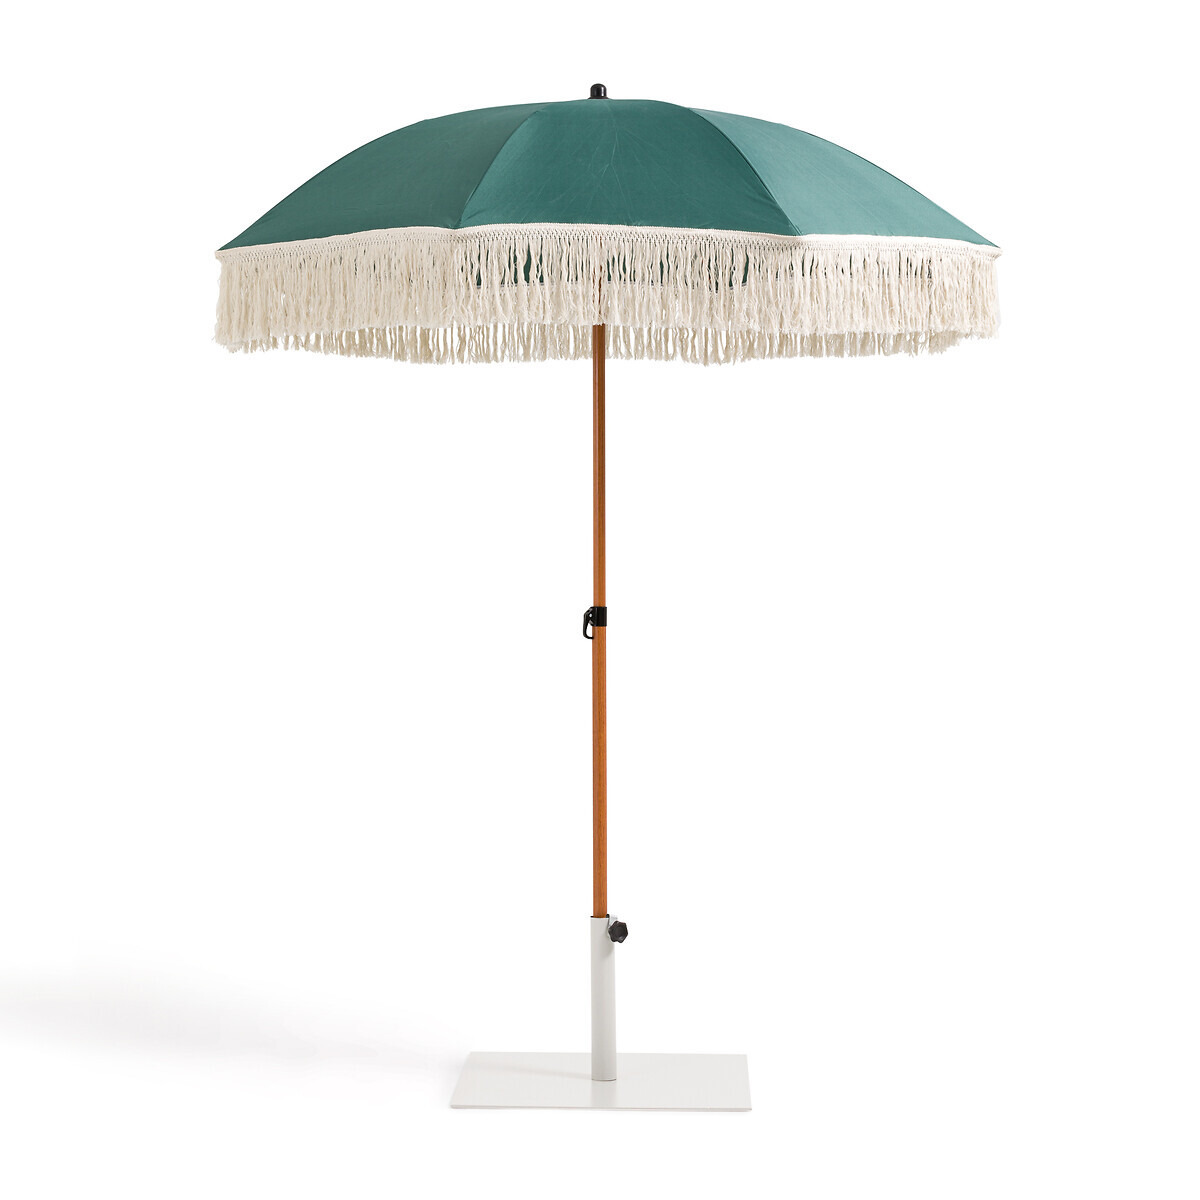 Biara Fringed Parasol Garden Umbrella - image 1